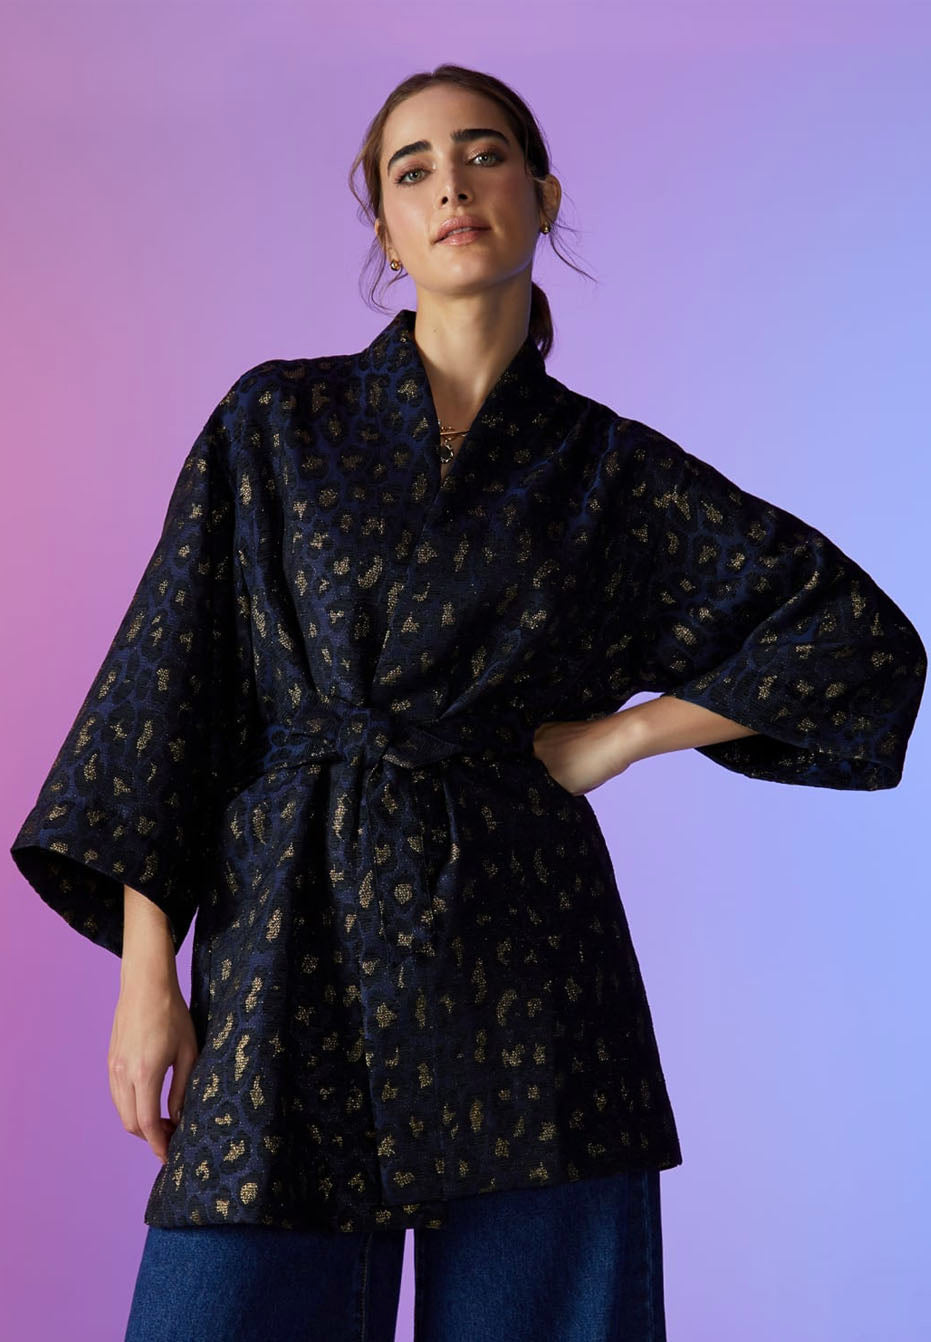 Modelo vestindo kimono azul